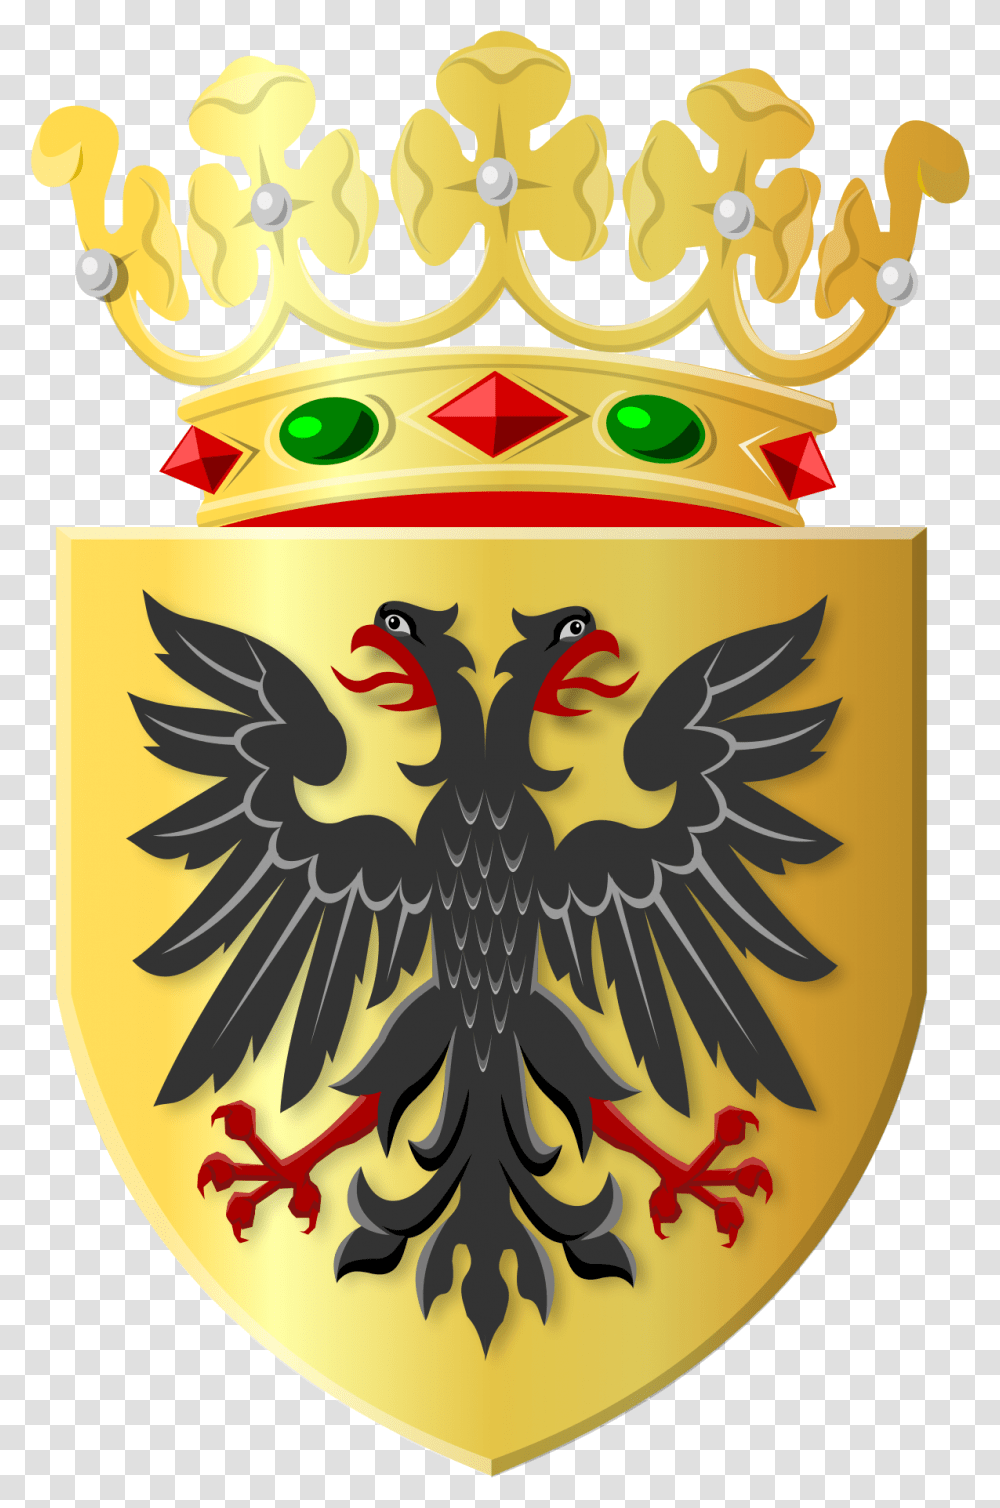 Filegolden Shield With Black Eagle And Golden Crownsvg Gemeente Loppersum, Armor, Symbol, Emblem, Logo Transparent Png